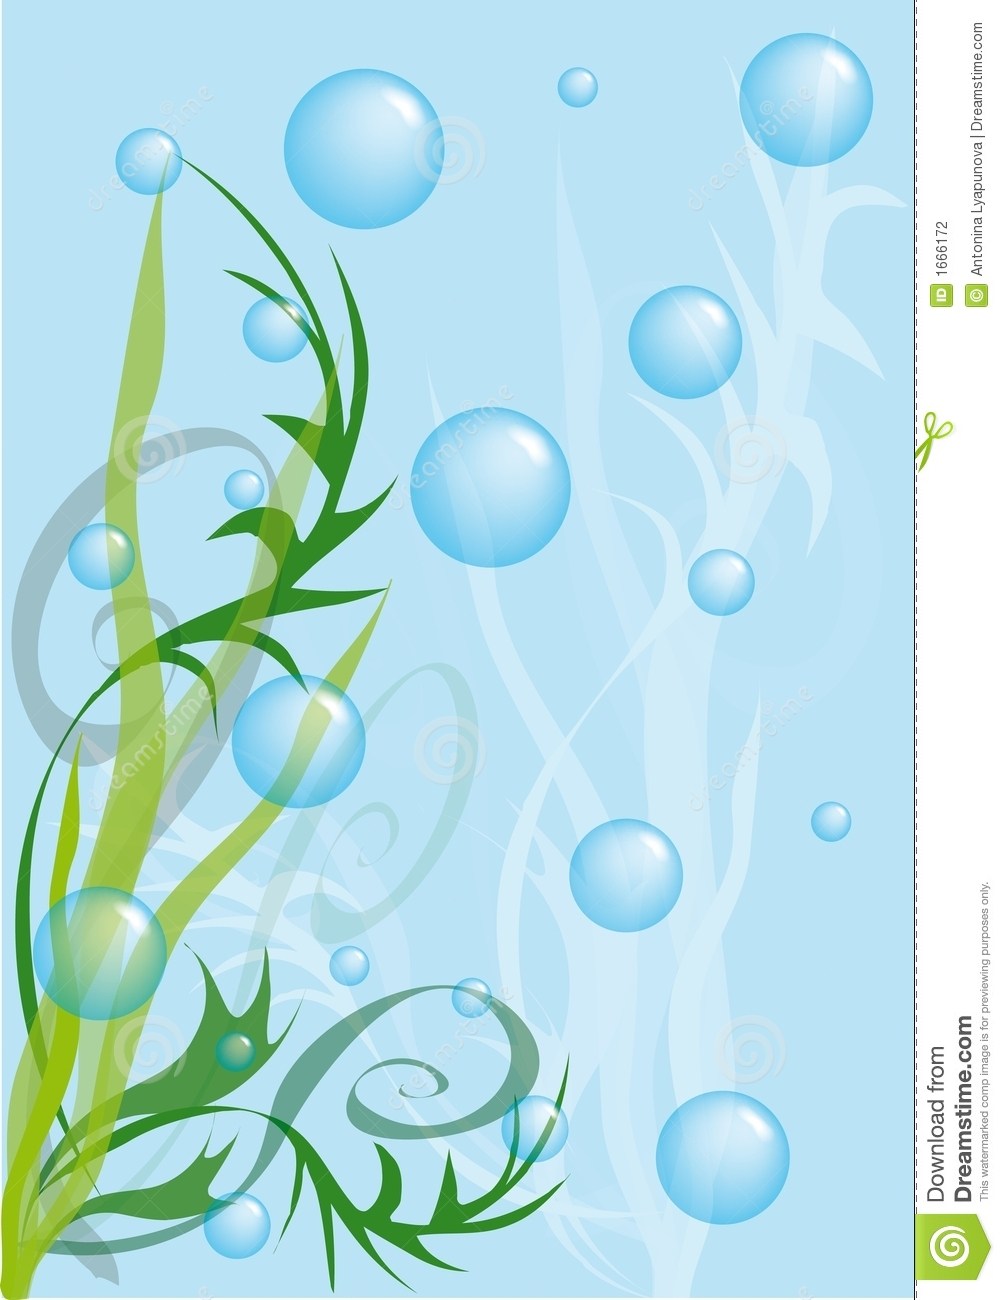 Underwater bubbles clipart 8 » Clipart Portal.